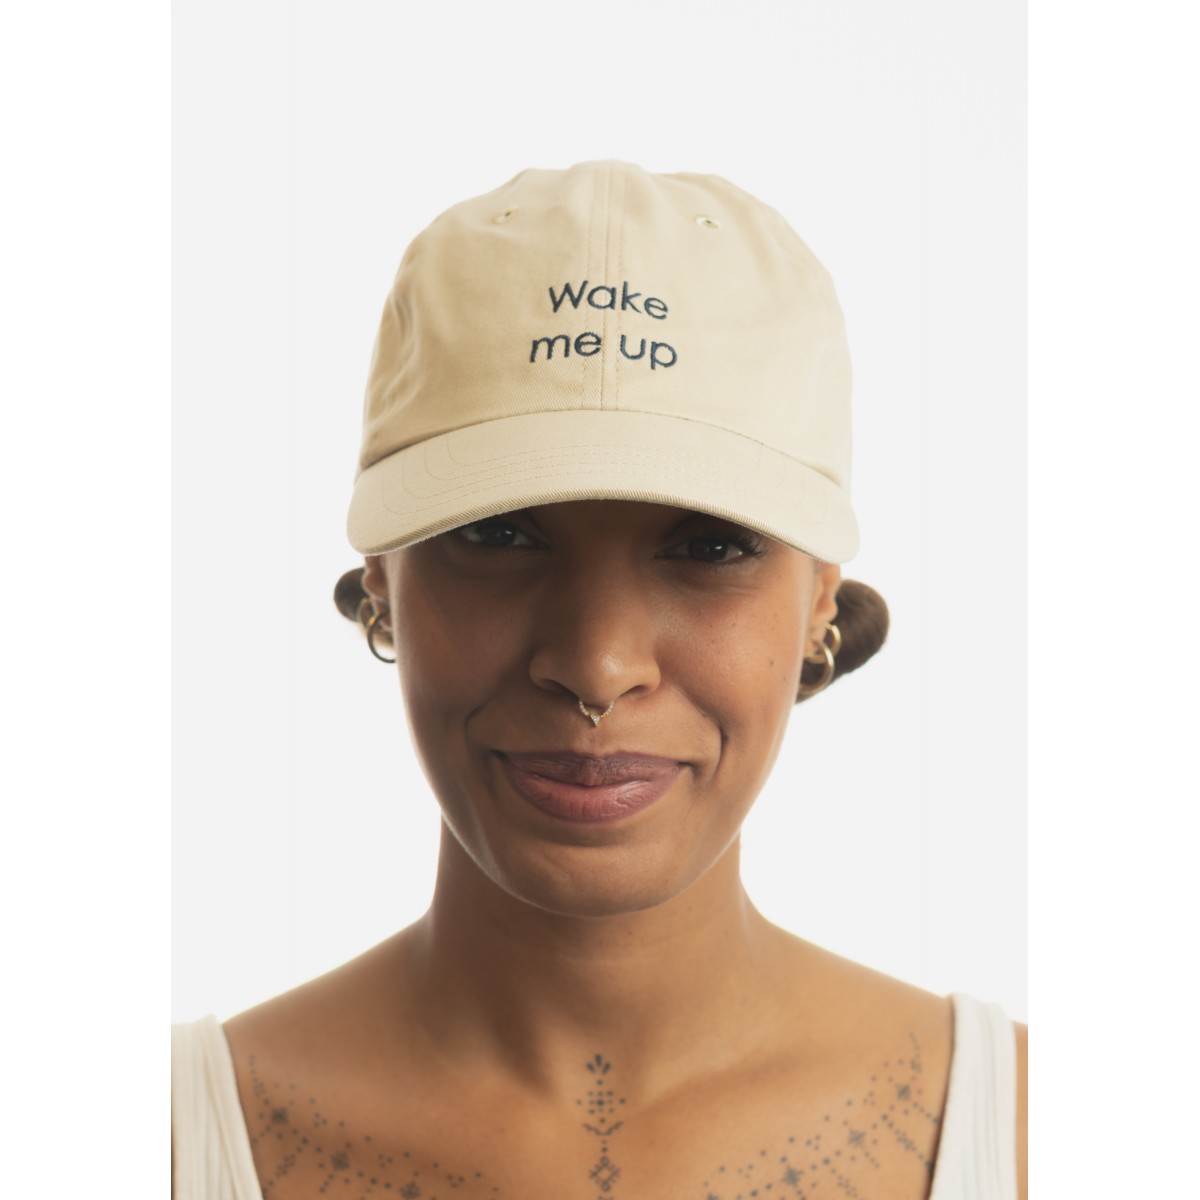 Harlem - casquette en velours côtelé - pastel Carhartt WIP pour